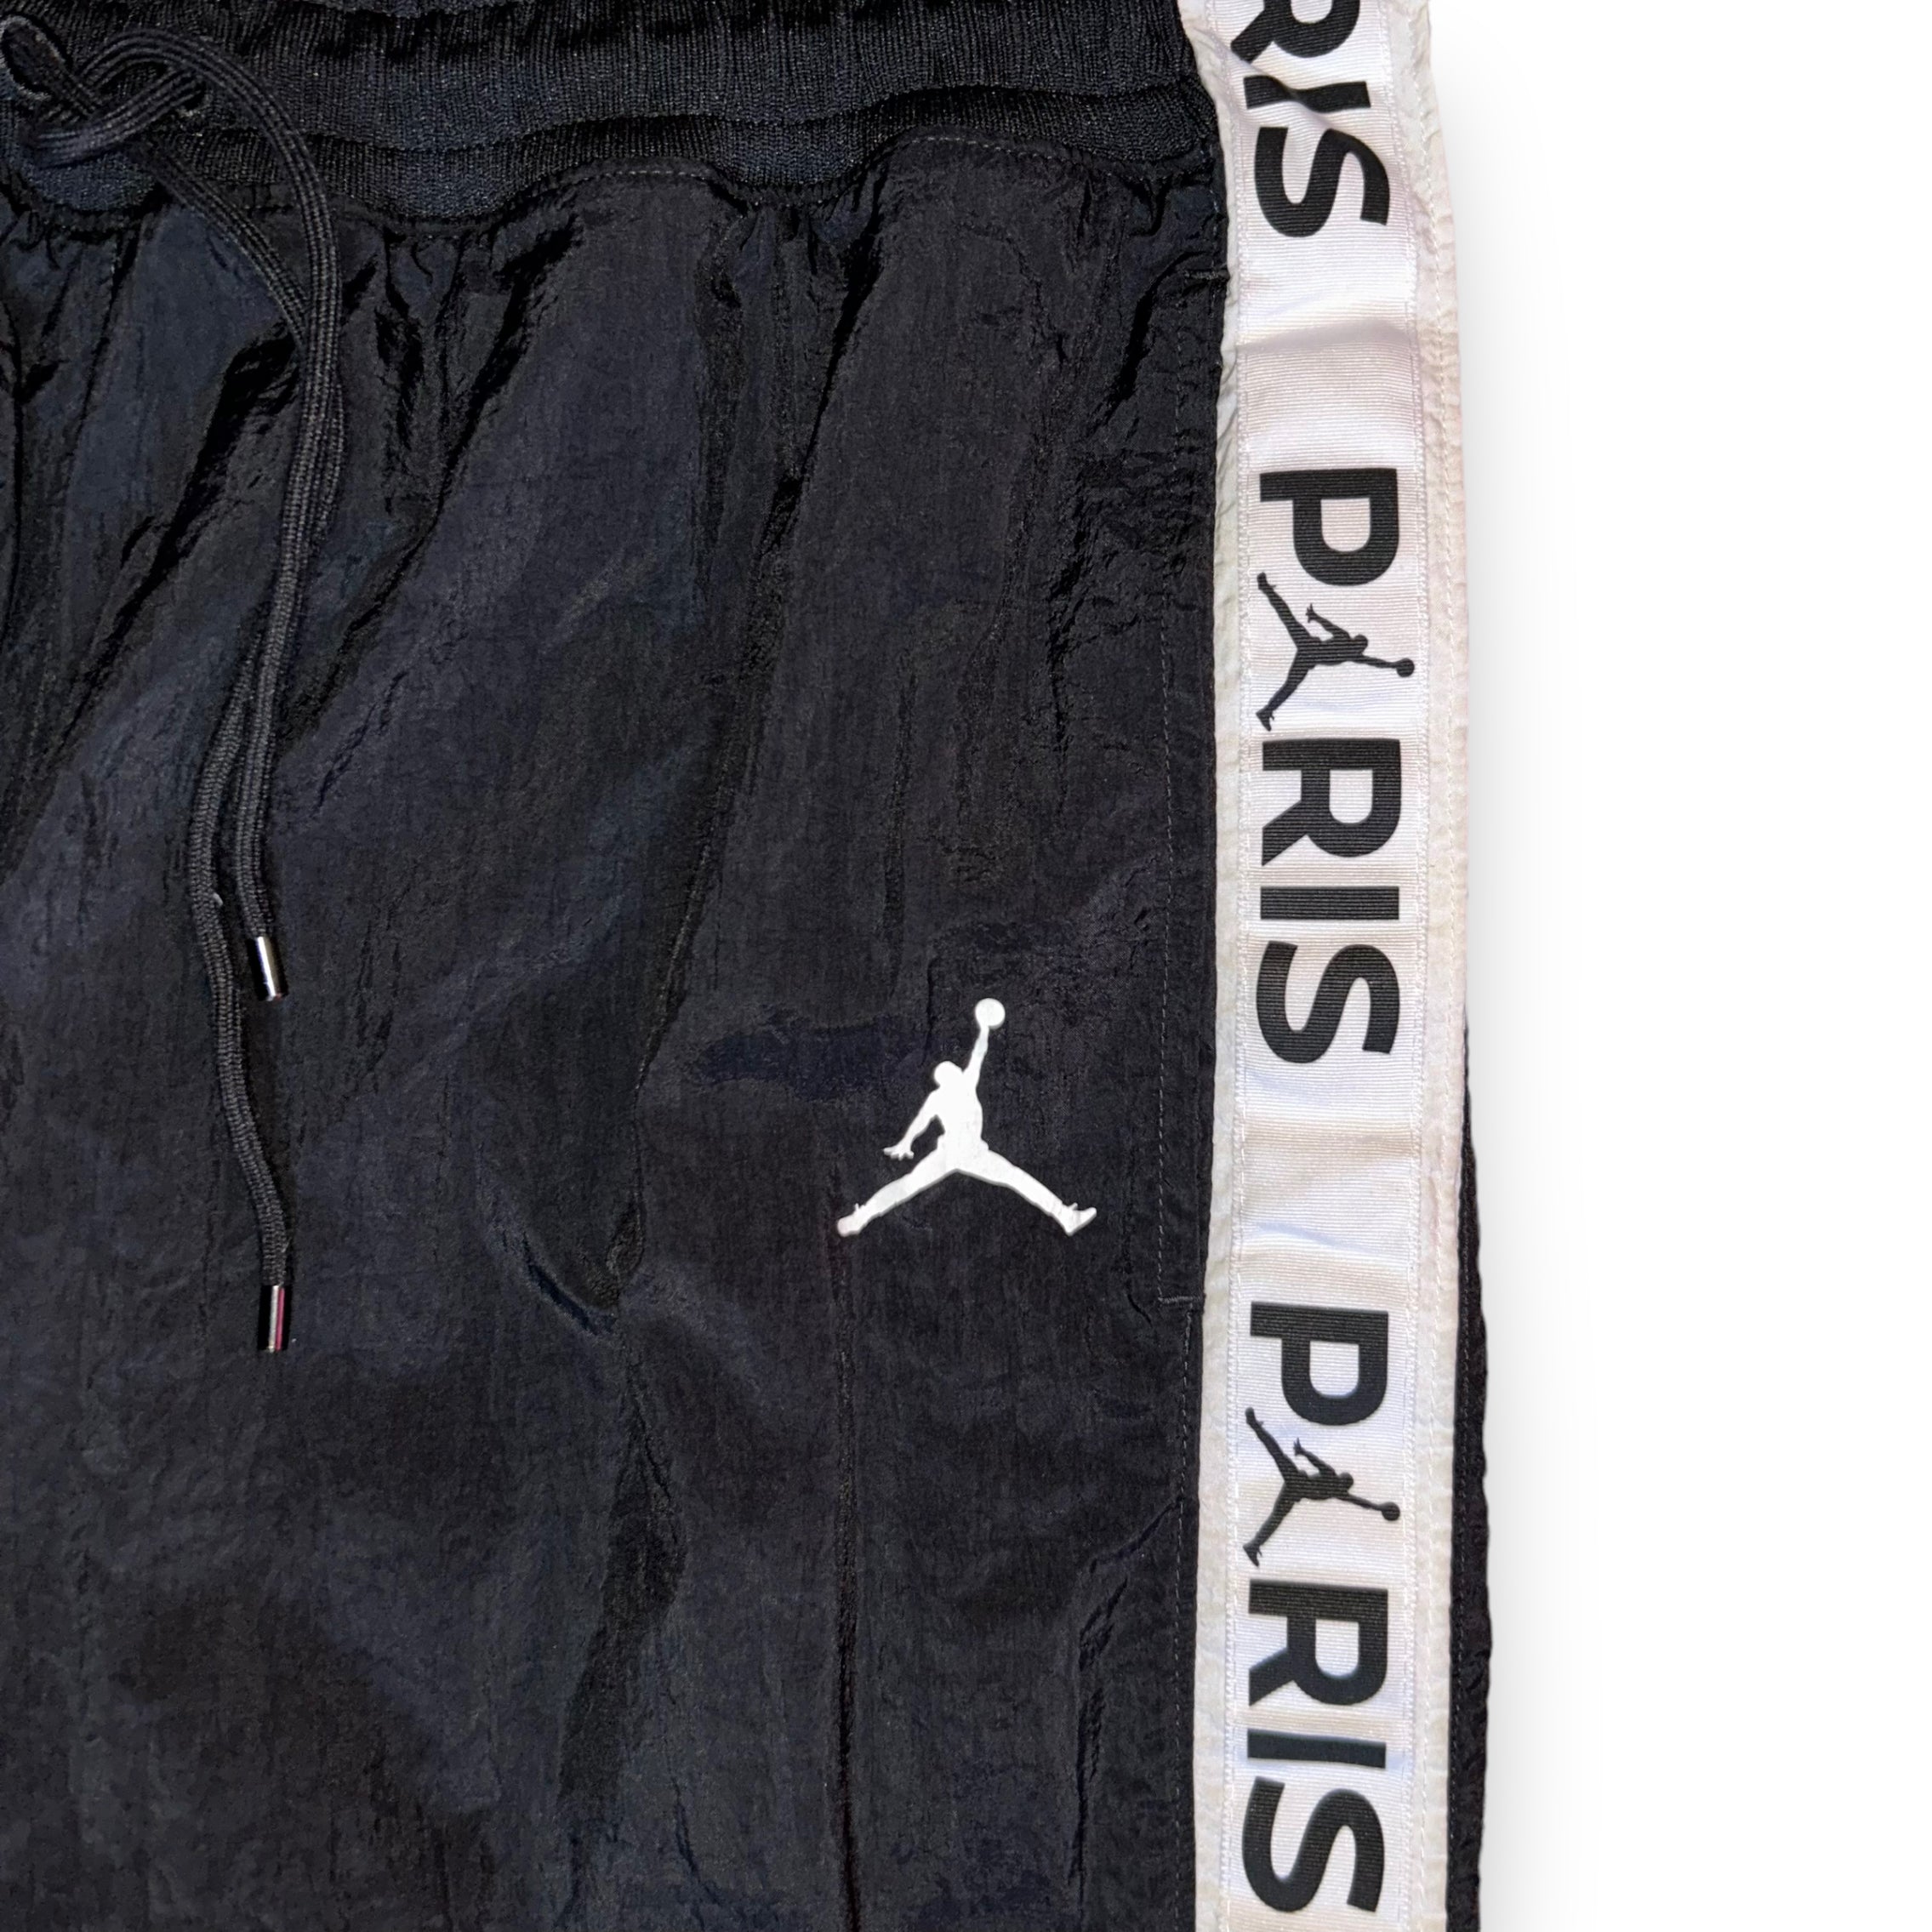 Pantaloni Jordan Paris Saint Germain  (L)